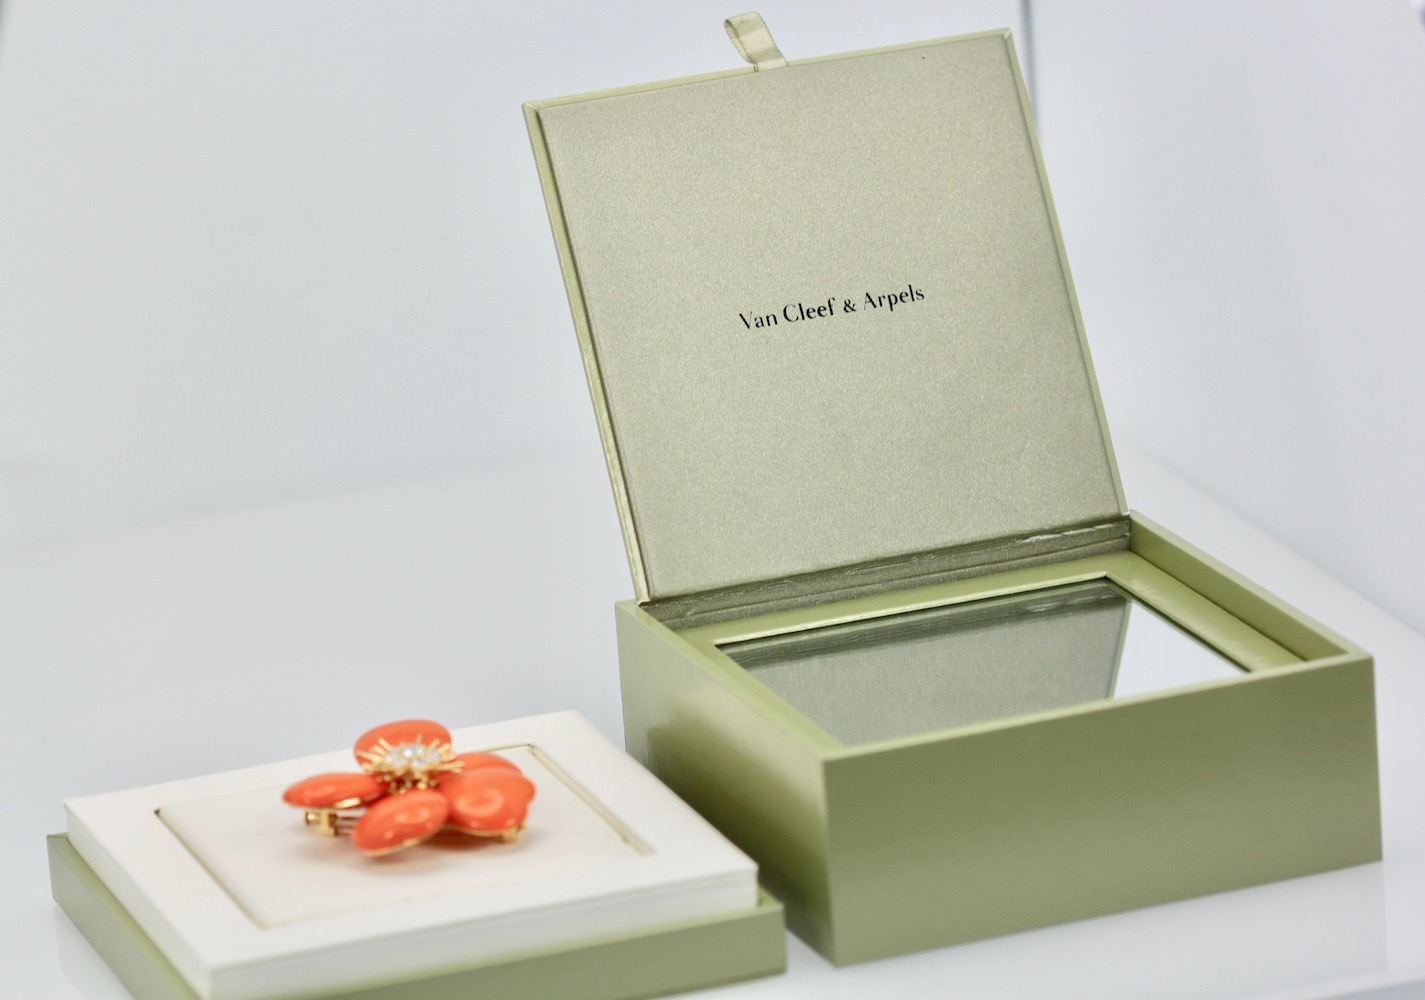 Rose de Noel Coral Diamond Brooch – with box